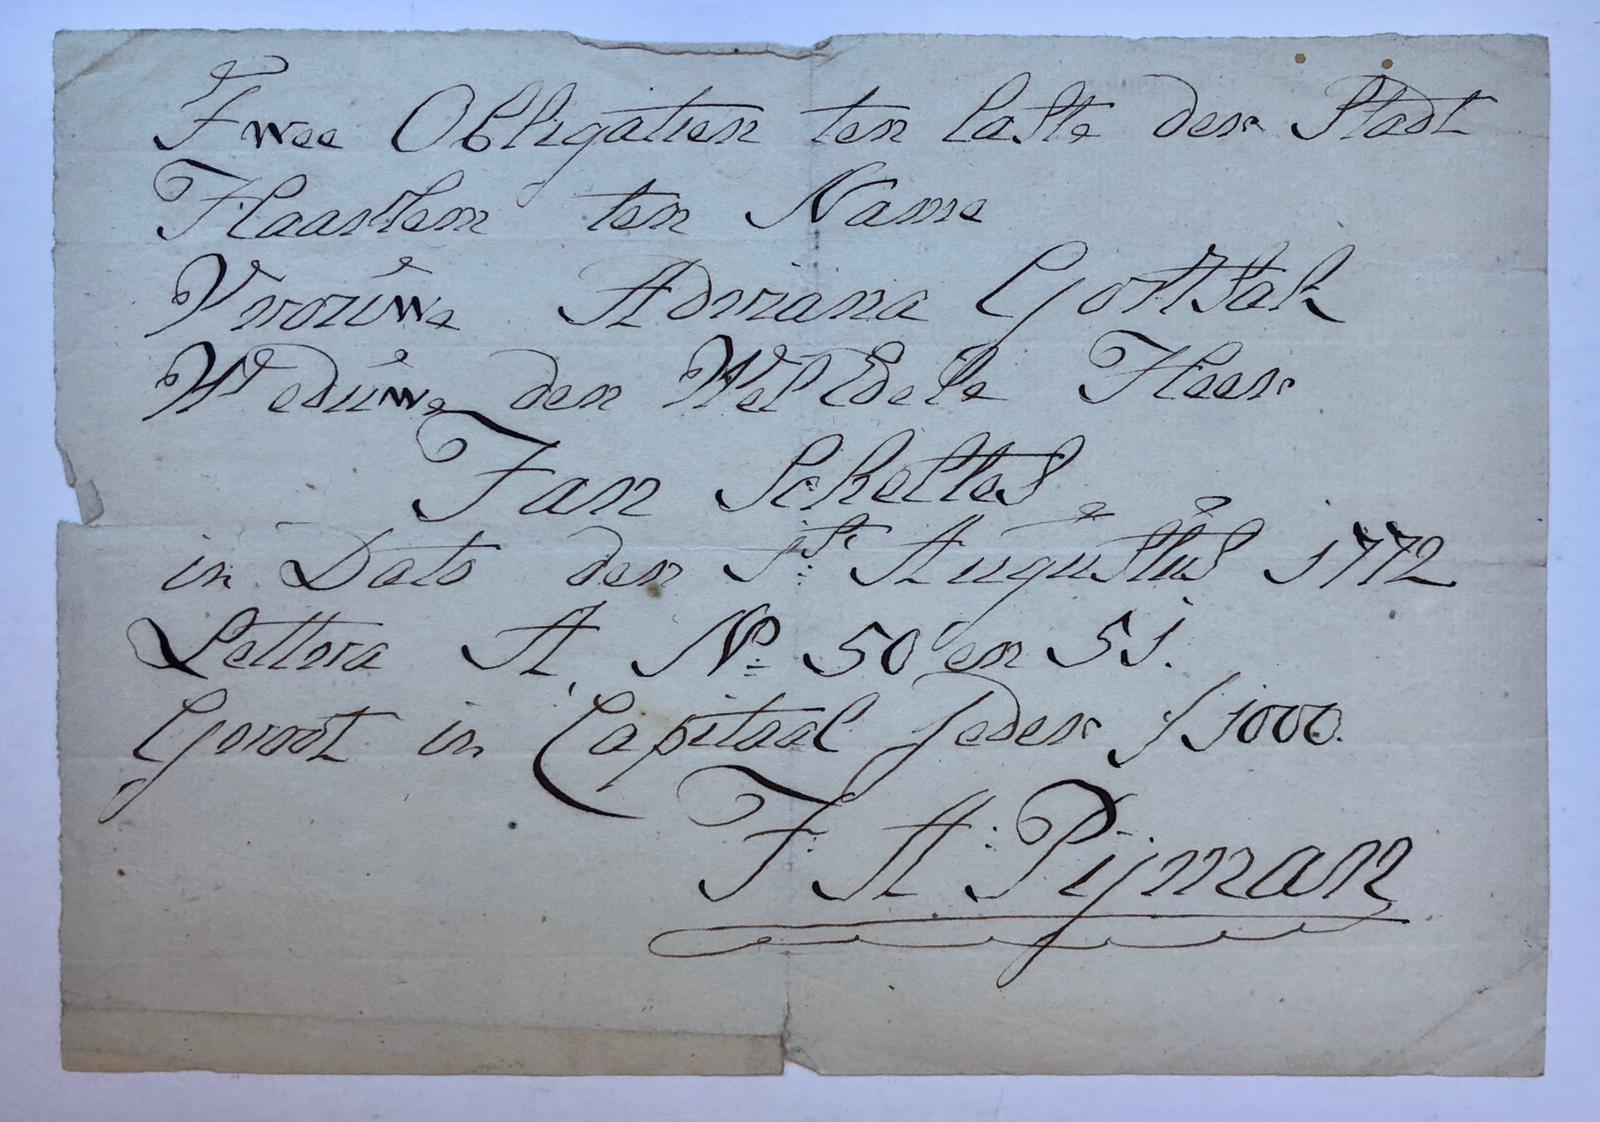  - [AUTOGRAPH, PIJMAN, GORTSAK, SCHELTES] Handtekening van J.A. Pijman, onder een opgave betreffende obligaties ten name van Adriana Gortsak, wed. Jan Scheltes, Haarlem 1772, 1 stuk.